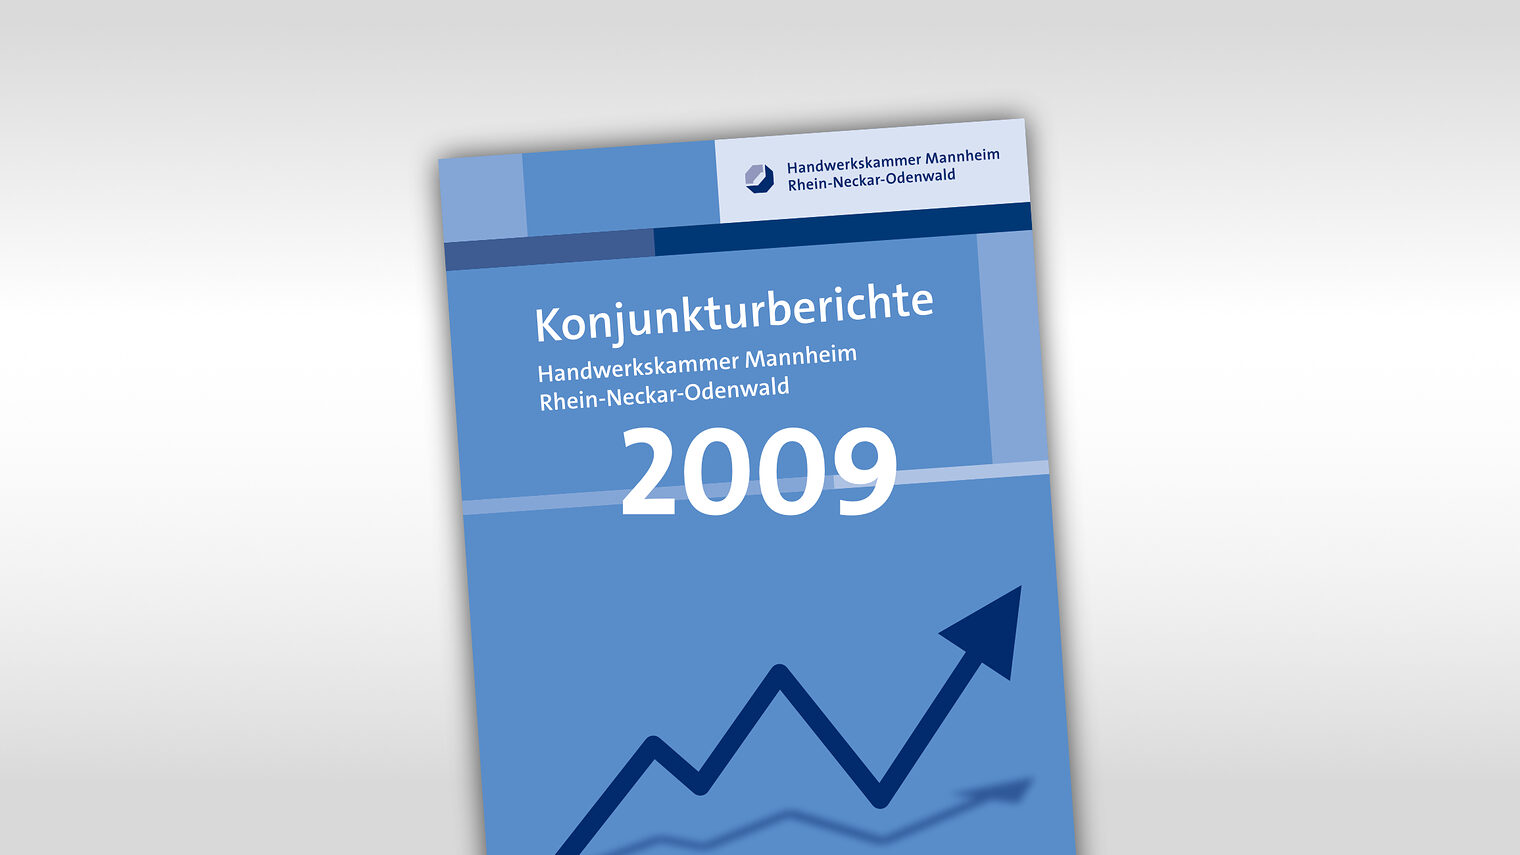 Titelmotiv Konjunkturbericht plus Jahreszahl 2009